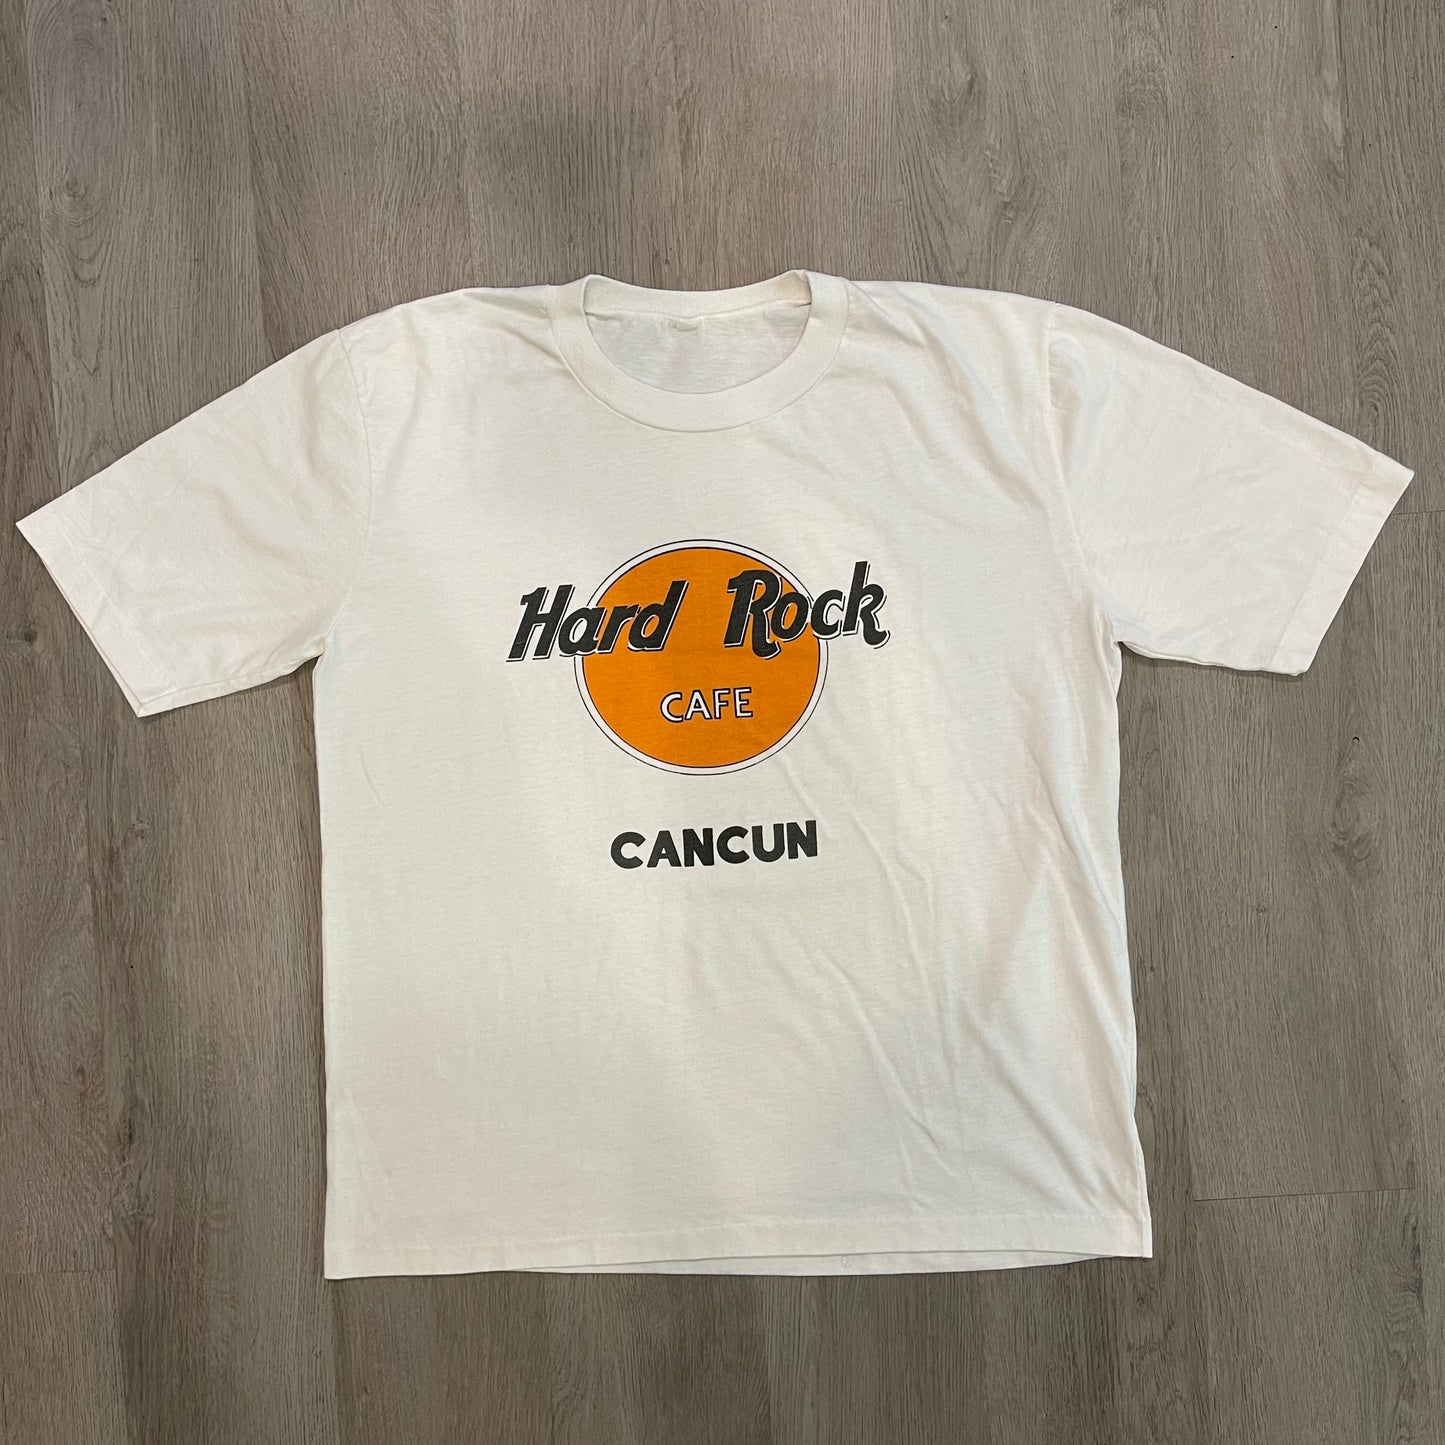 Hard Rock Cafe “CANCUN”